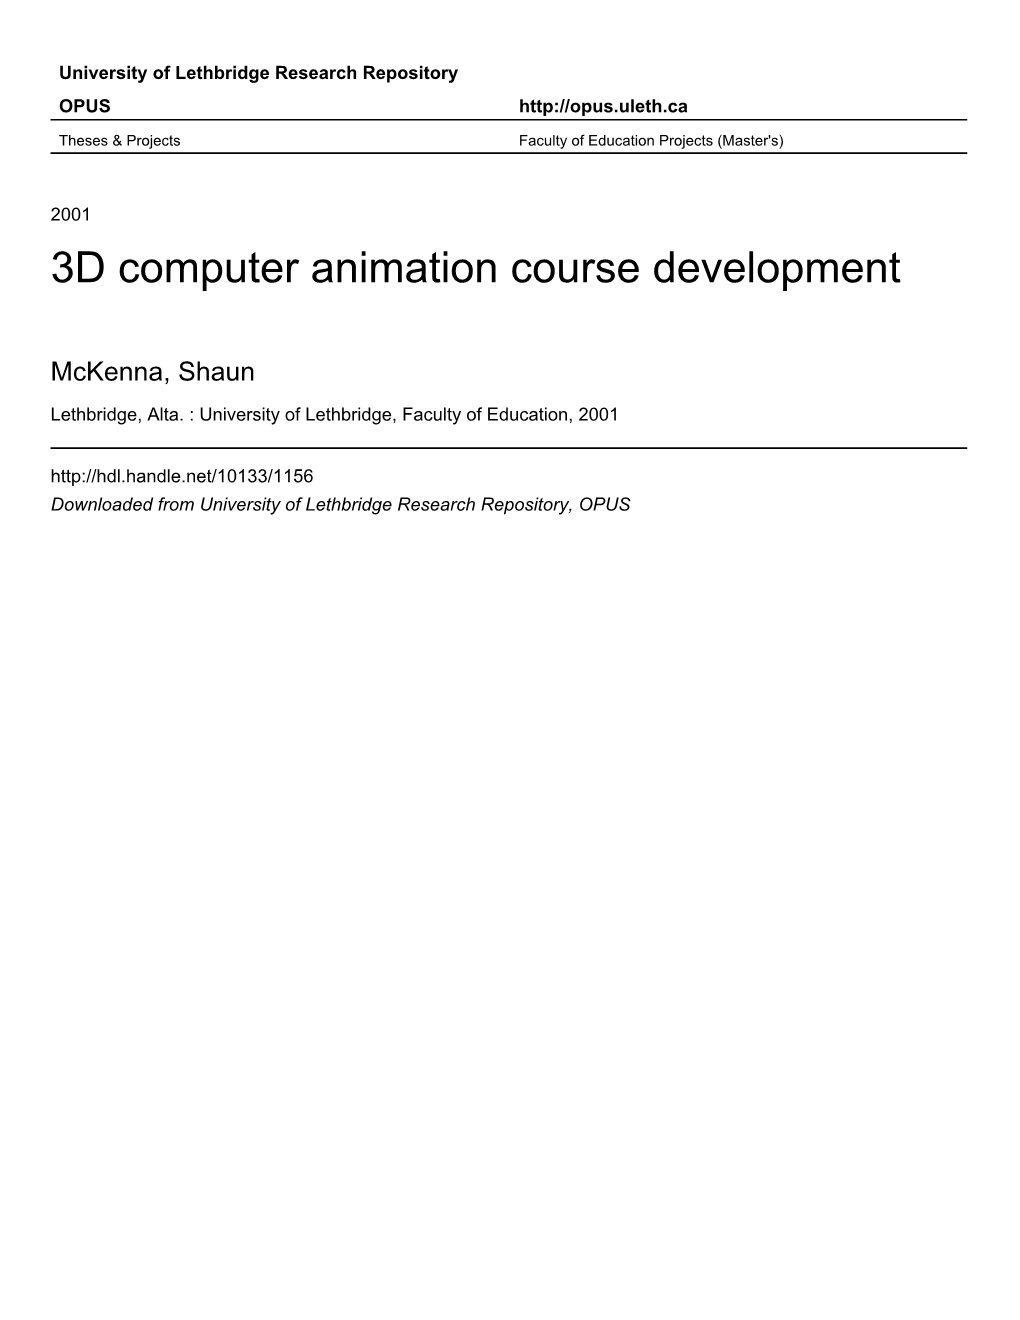 3D Computer Animation Course Development